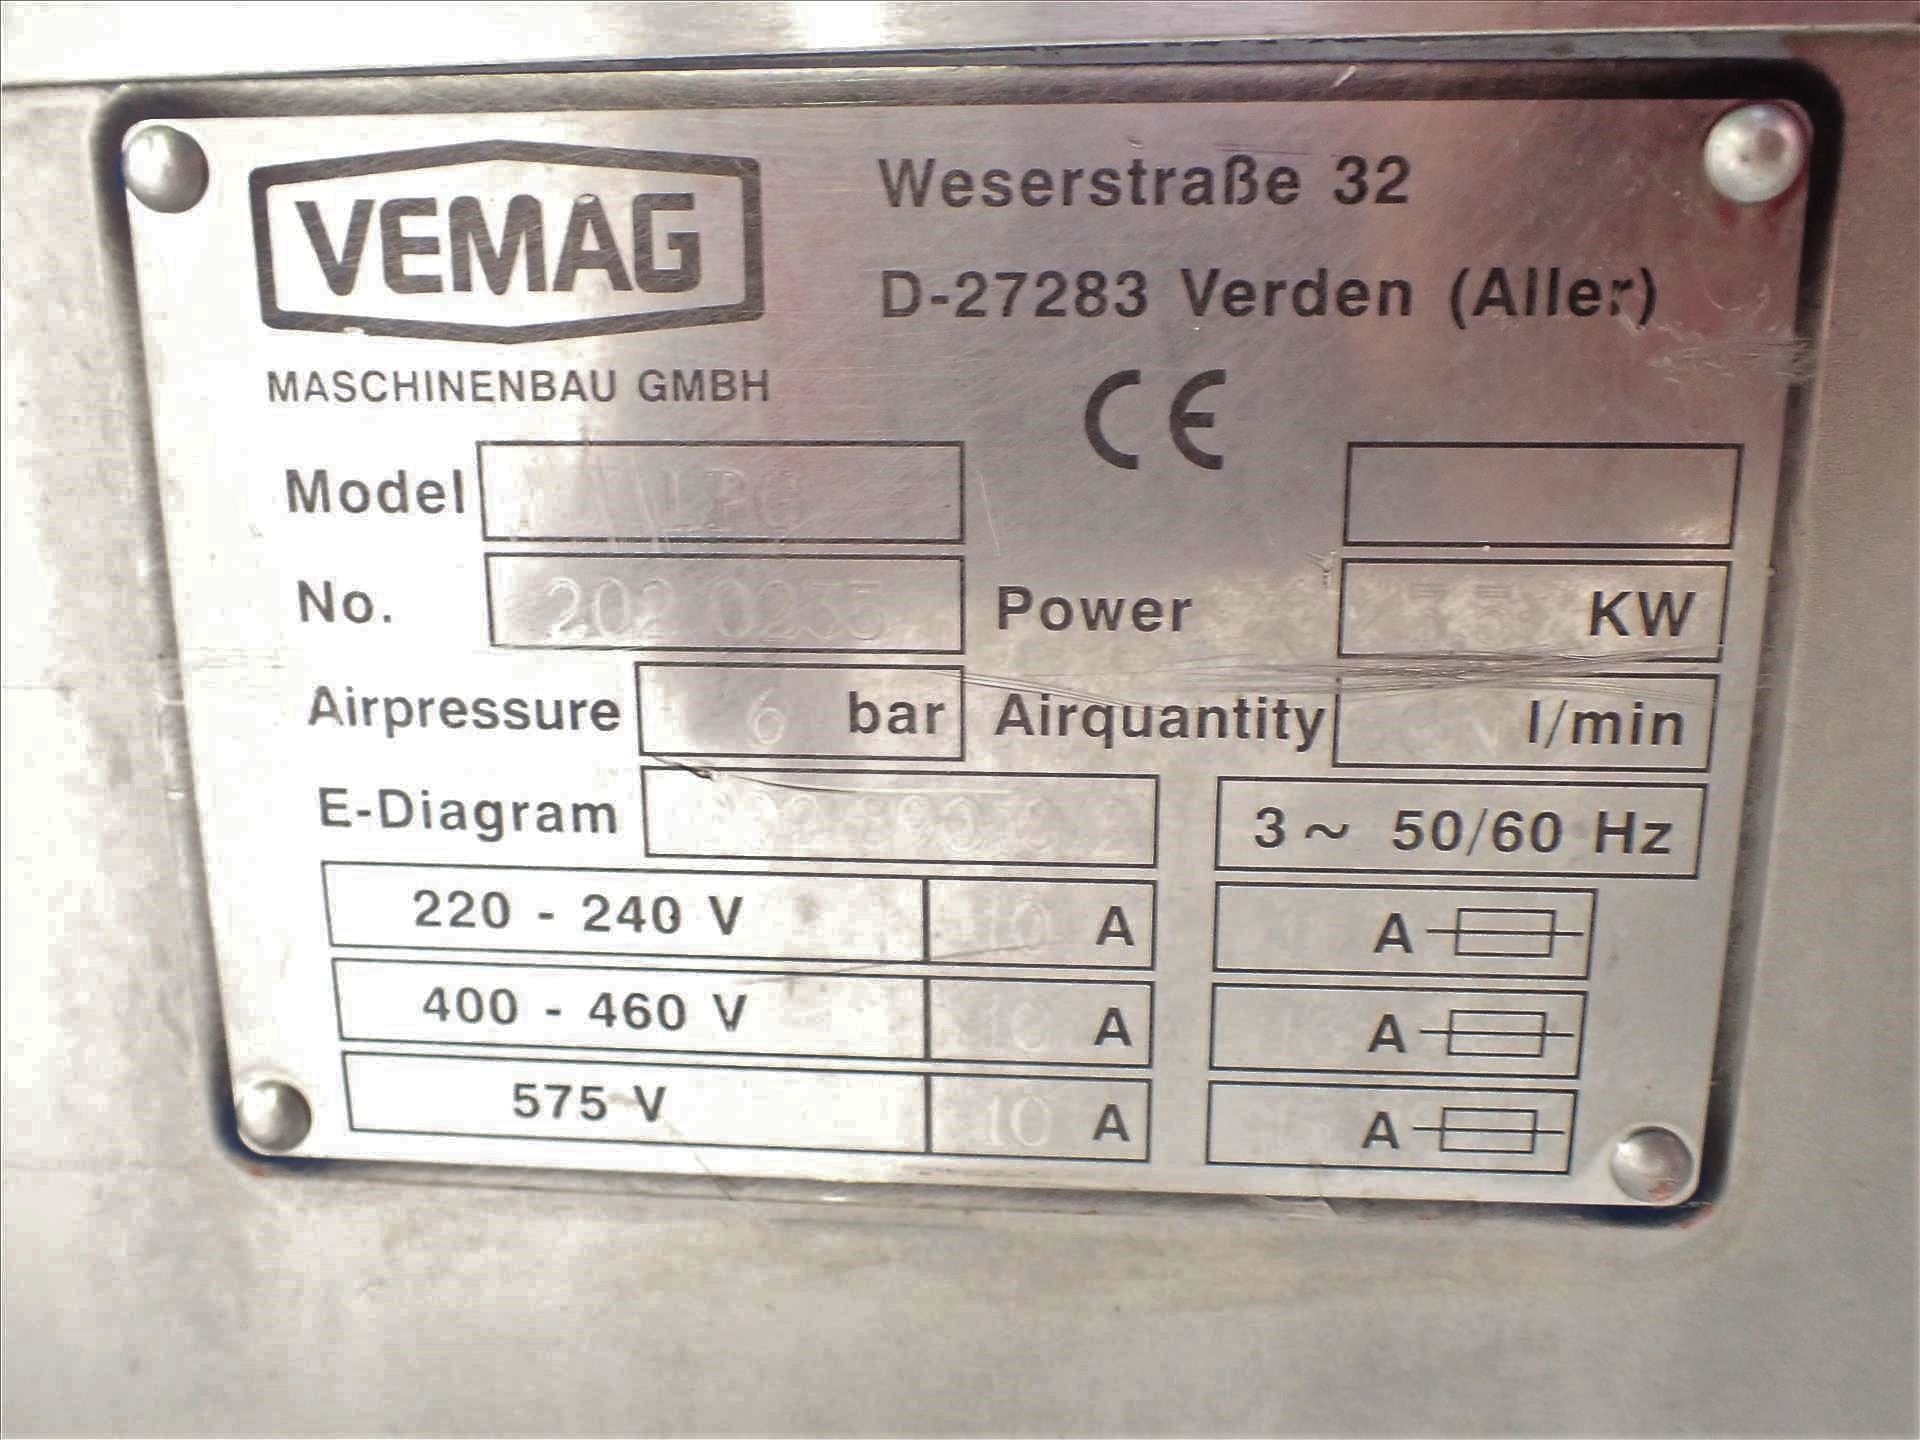 Vemag sausage linker, mod. LPG-202, ser. no. 2020235, 3.5 kW - Image 4 of 4